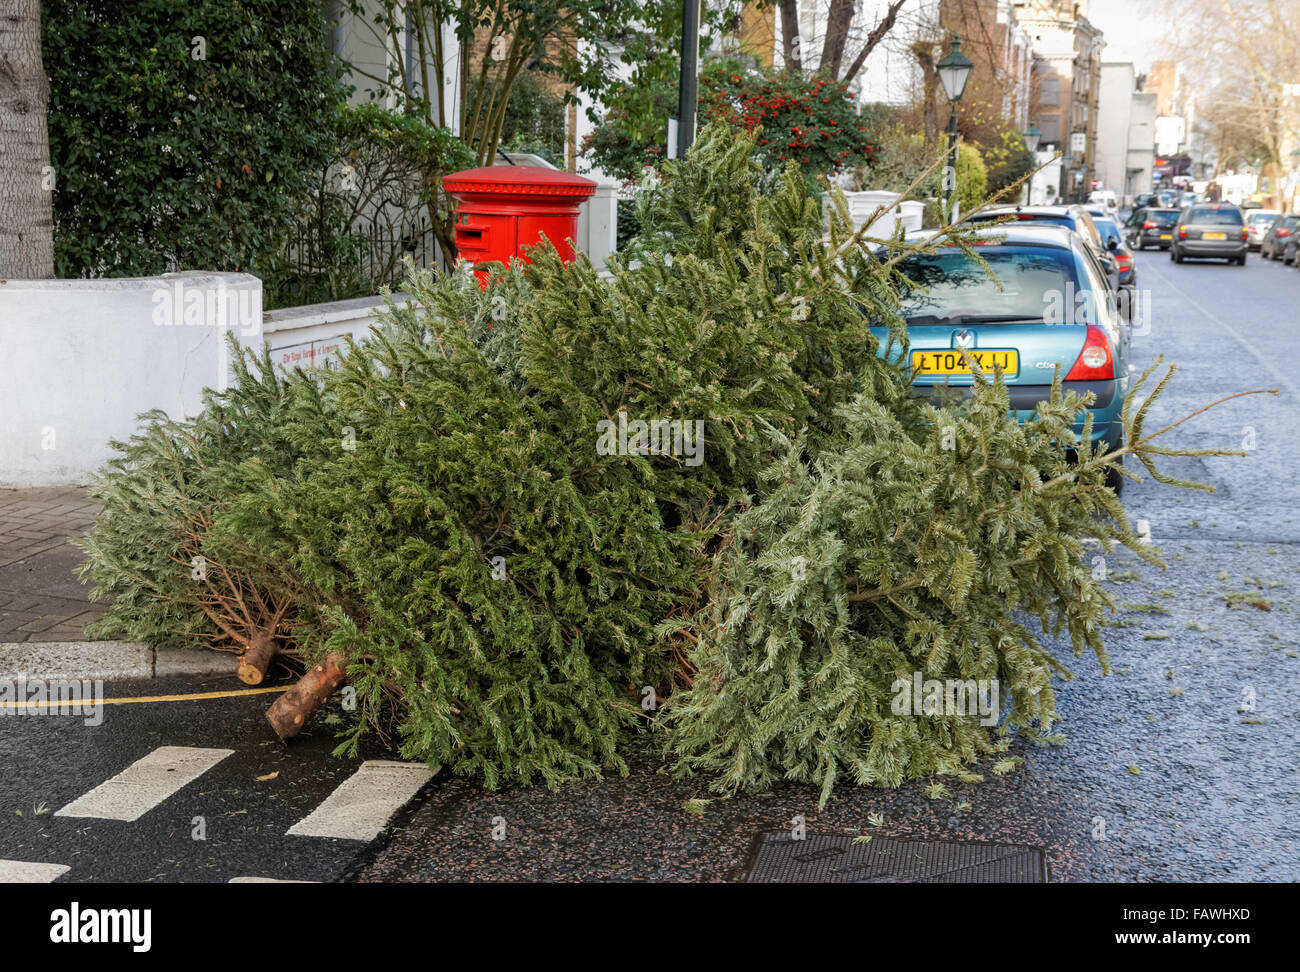 Ausrangierte Weihnachtsbäume links in die Straße, London England Vereinigtes Königreich UK Stockfoto